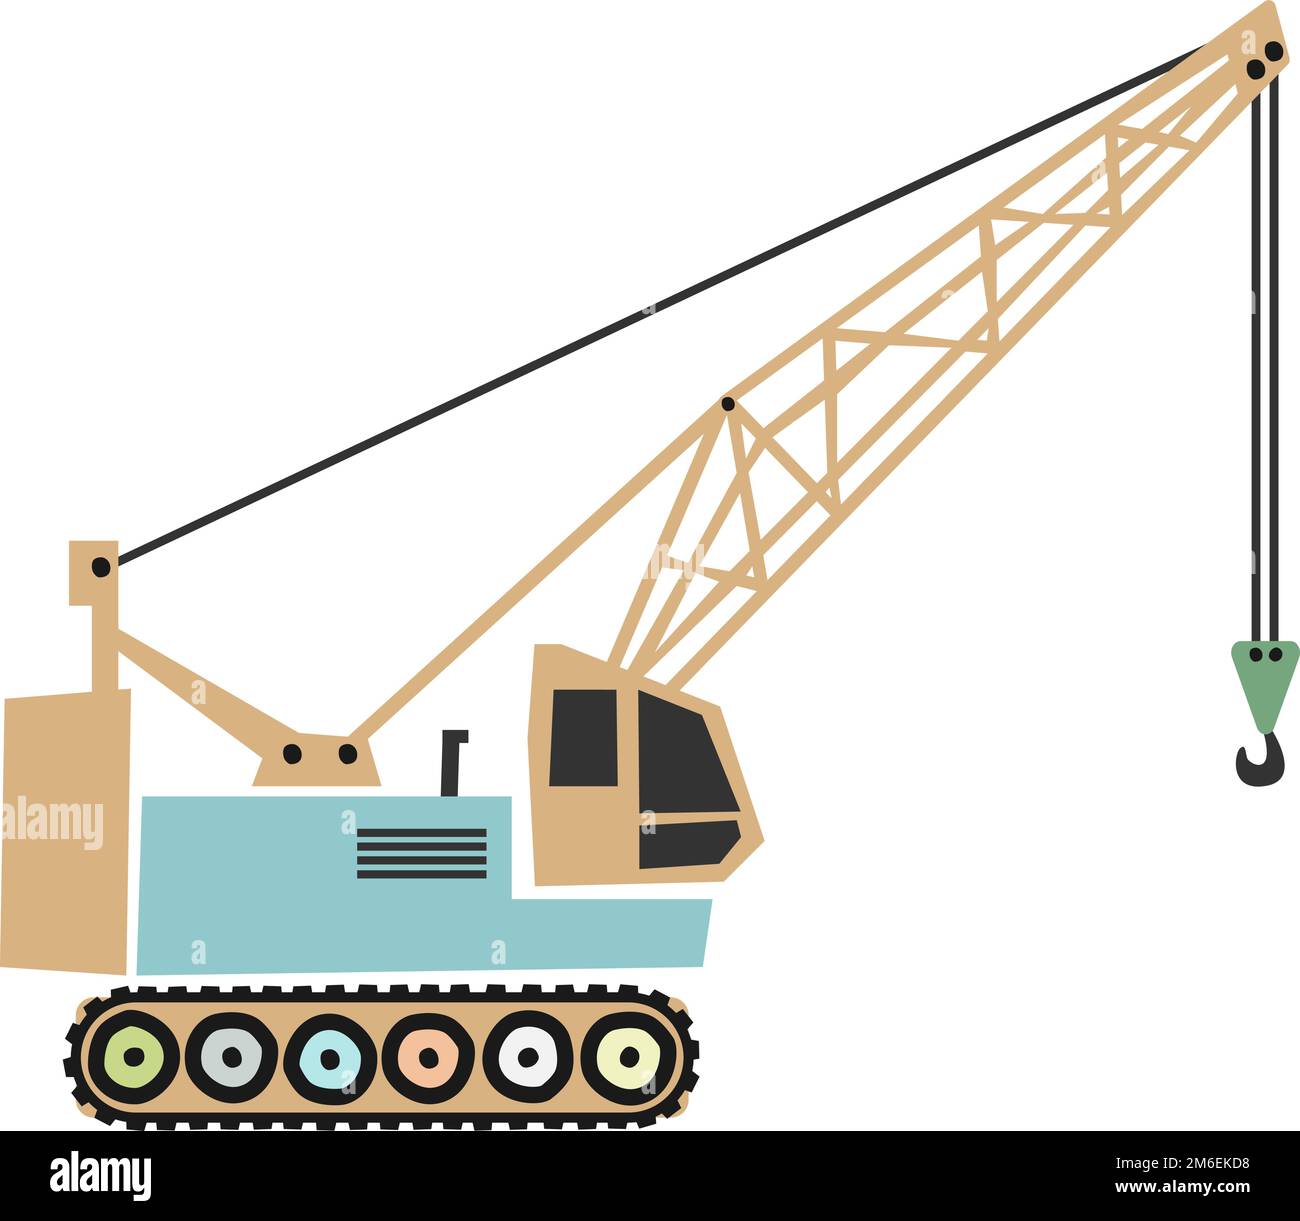 illustration vectorielle de machines de construction de type scandi pour enfants, grue sur chenilles isolée sur fond blanc Illustration de Vecteur